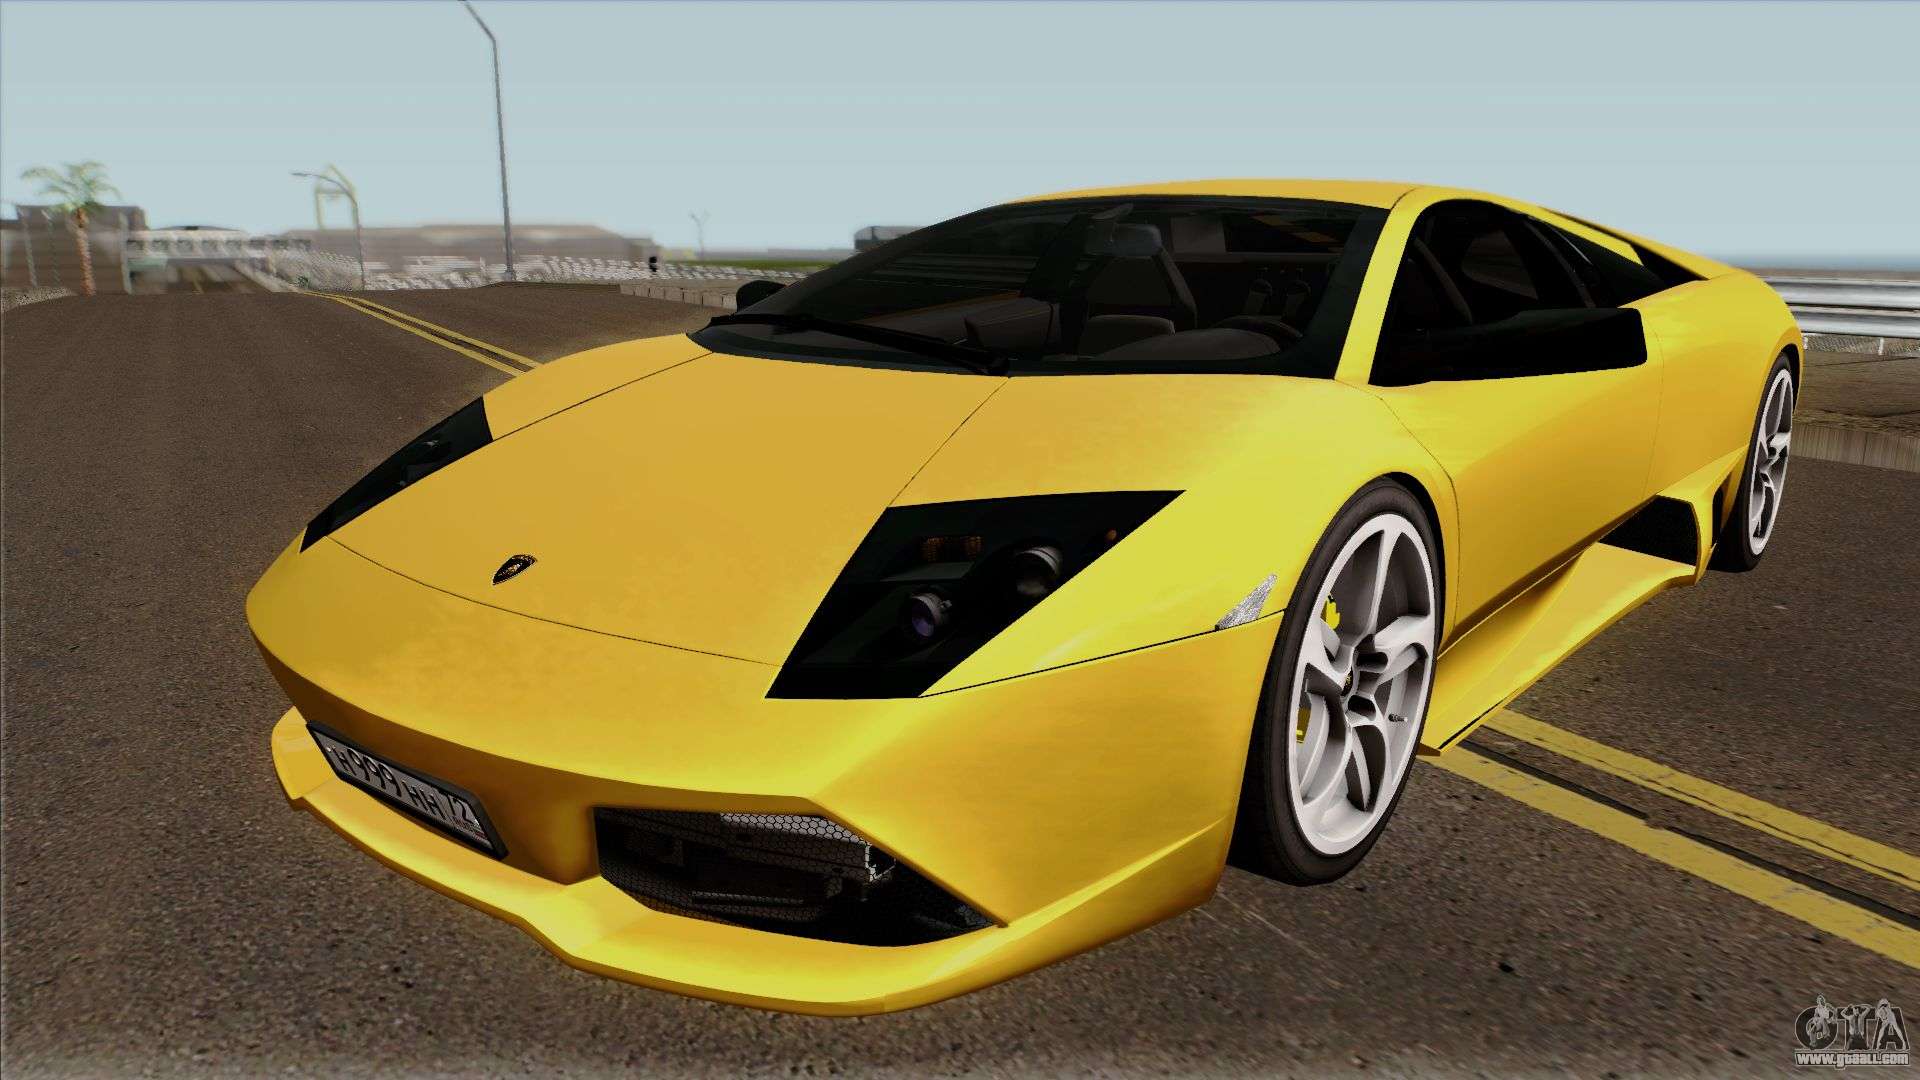 Lamborghini Murcielago LP640 for GTA San Andreas